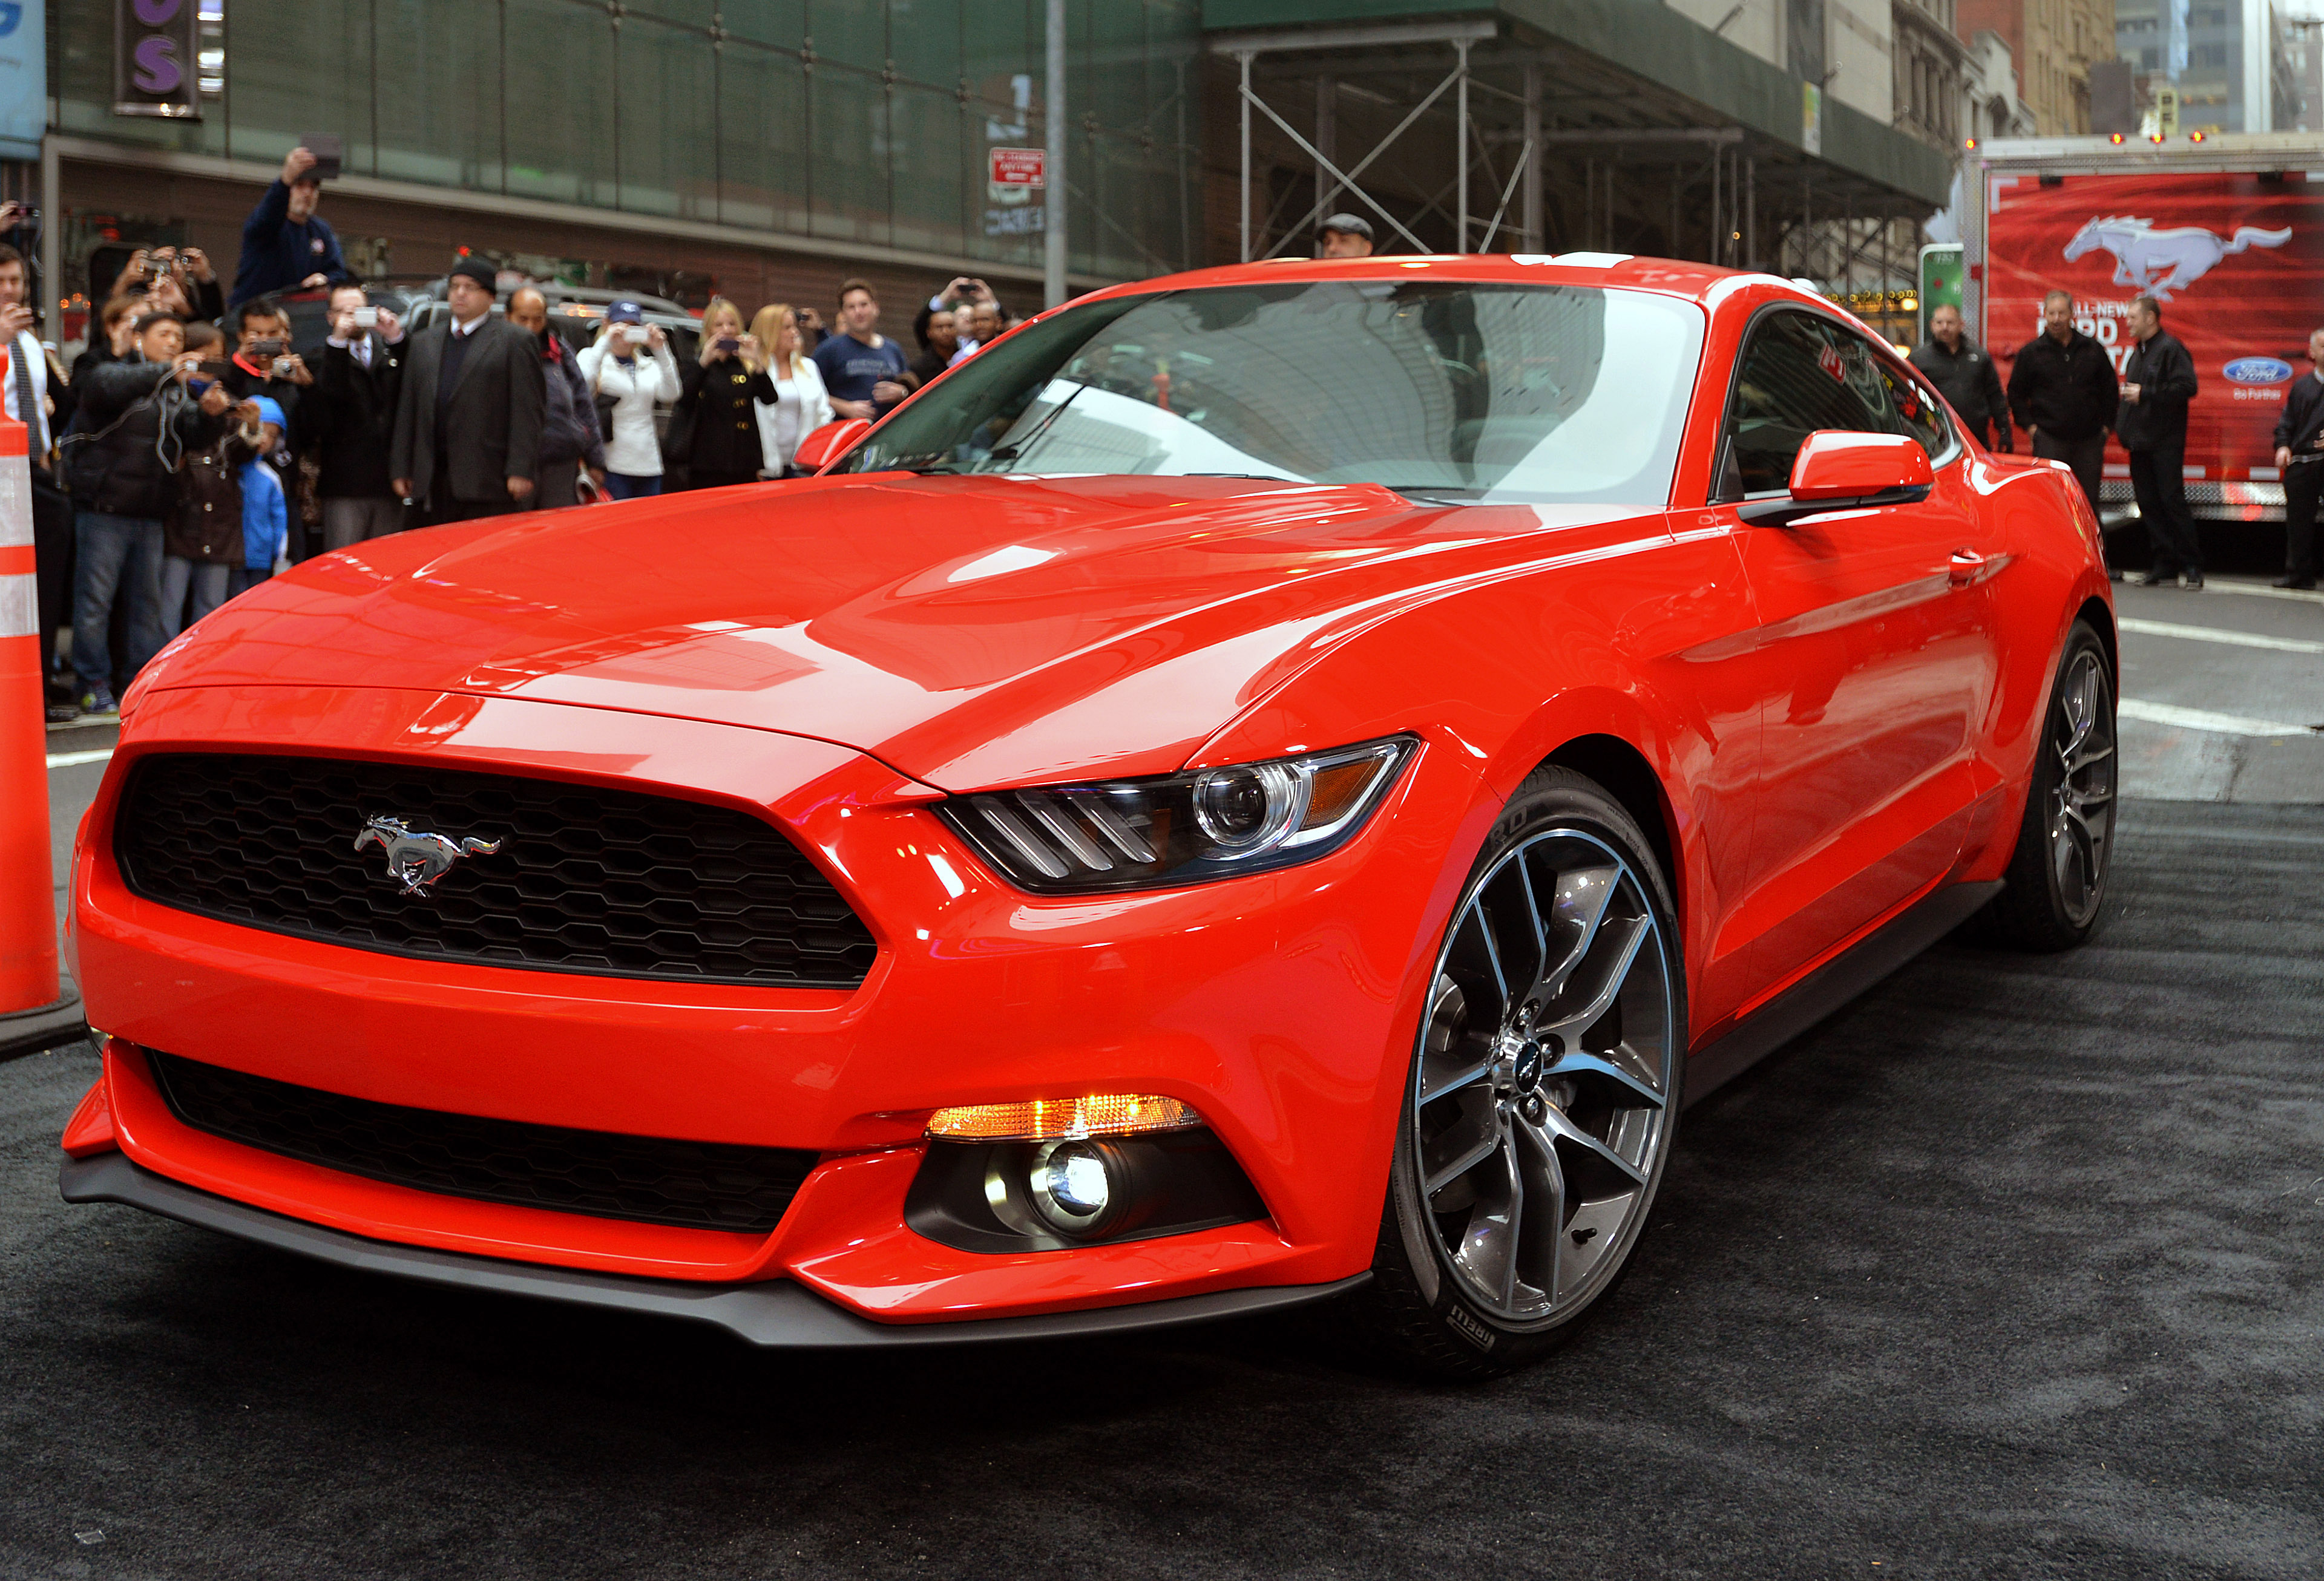 Машина 2015 года выпуска. Форд Мустанг 2015. Форд Мустанг 2015 красный. Ford Mustang 2015. Ford Mustang 2015 красный.